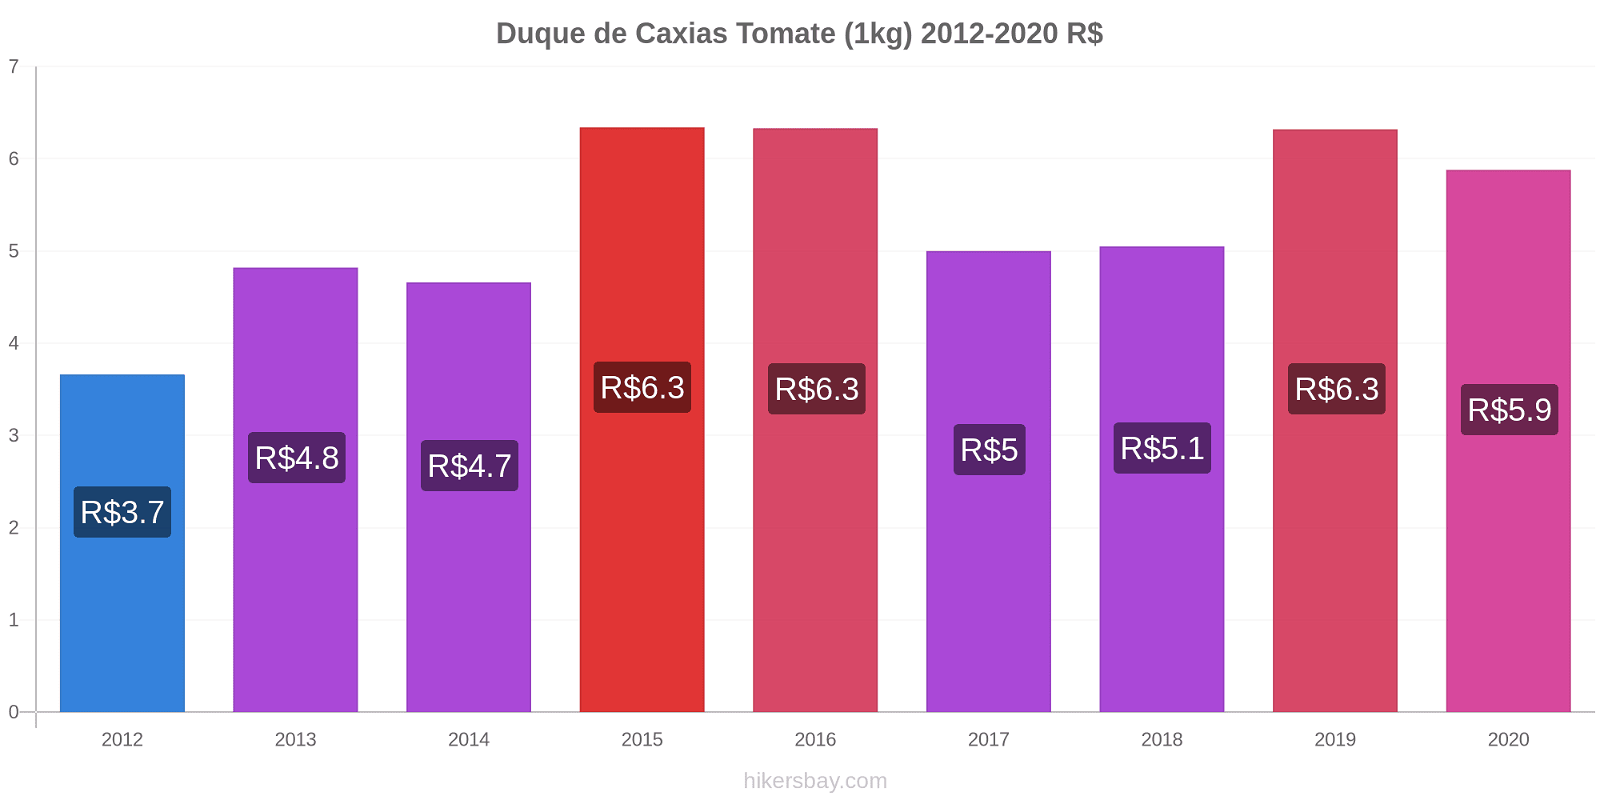 Duque de Caxias cambios de precios Tomate (1kg) hikersbay.com